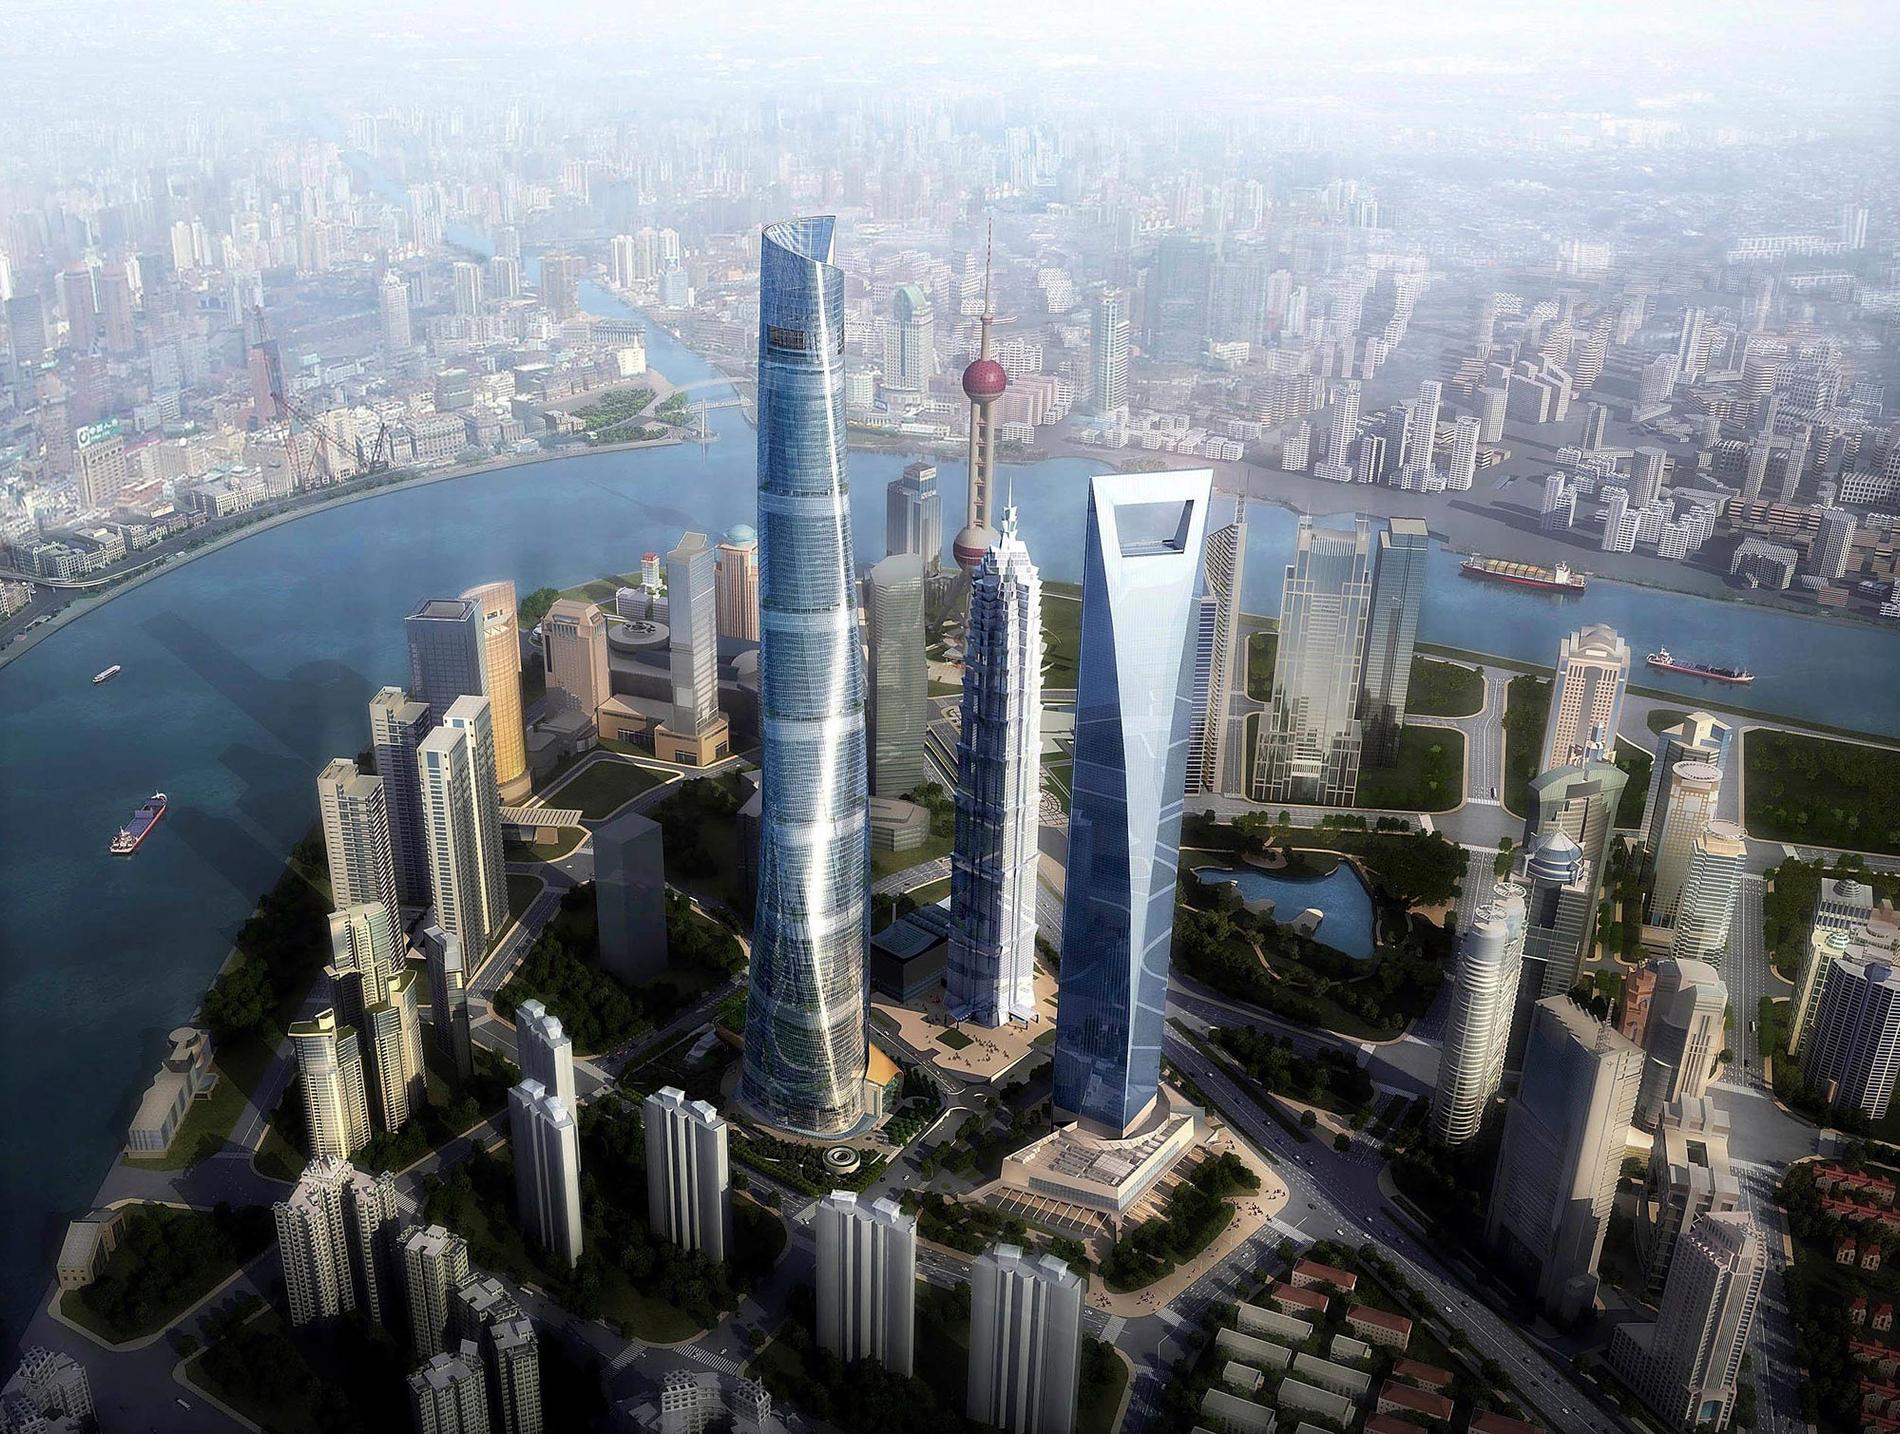 11. WORLD FINANCIAL CENTER, SHANGHAI Skyskrapan (den som ser ut som en flasköppnare) hann knappt invigas i augusti 2008 i Shanghai förrän bygget av en ännu högre påbörjades strax intill, 632 meter hög. Men även Financial Centers mått är imponerande. Höjd: 492 meter. Klar: 2008. Byggkostnad: 12 miljarder kronor. Flyg till Shanghai - kolla vad det kostar här.